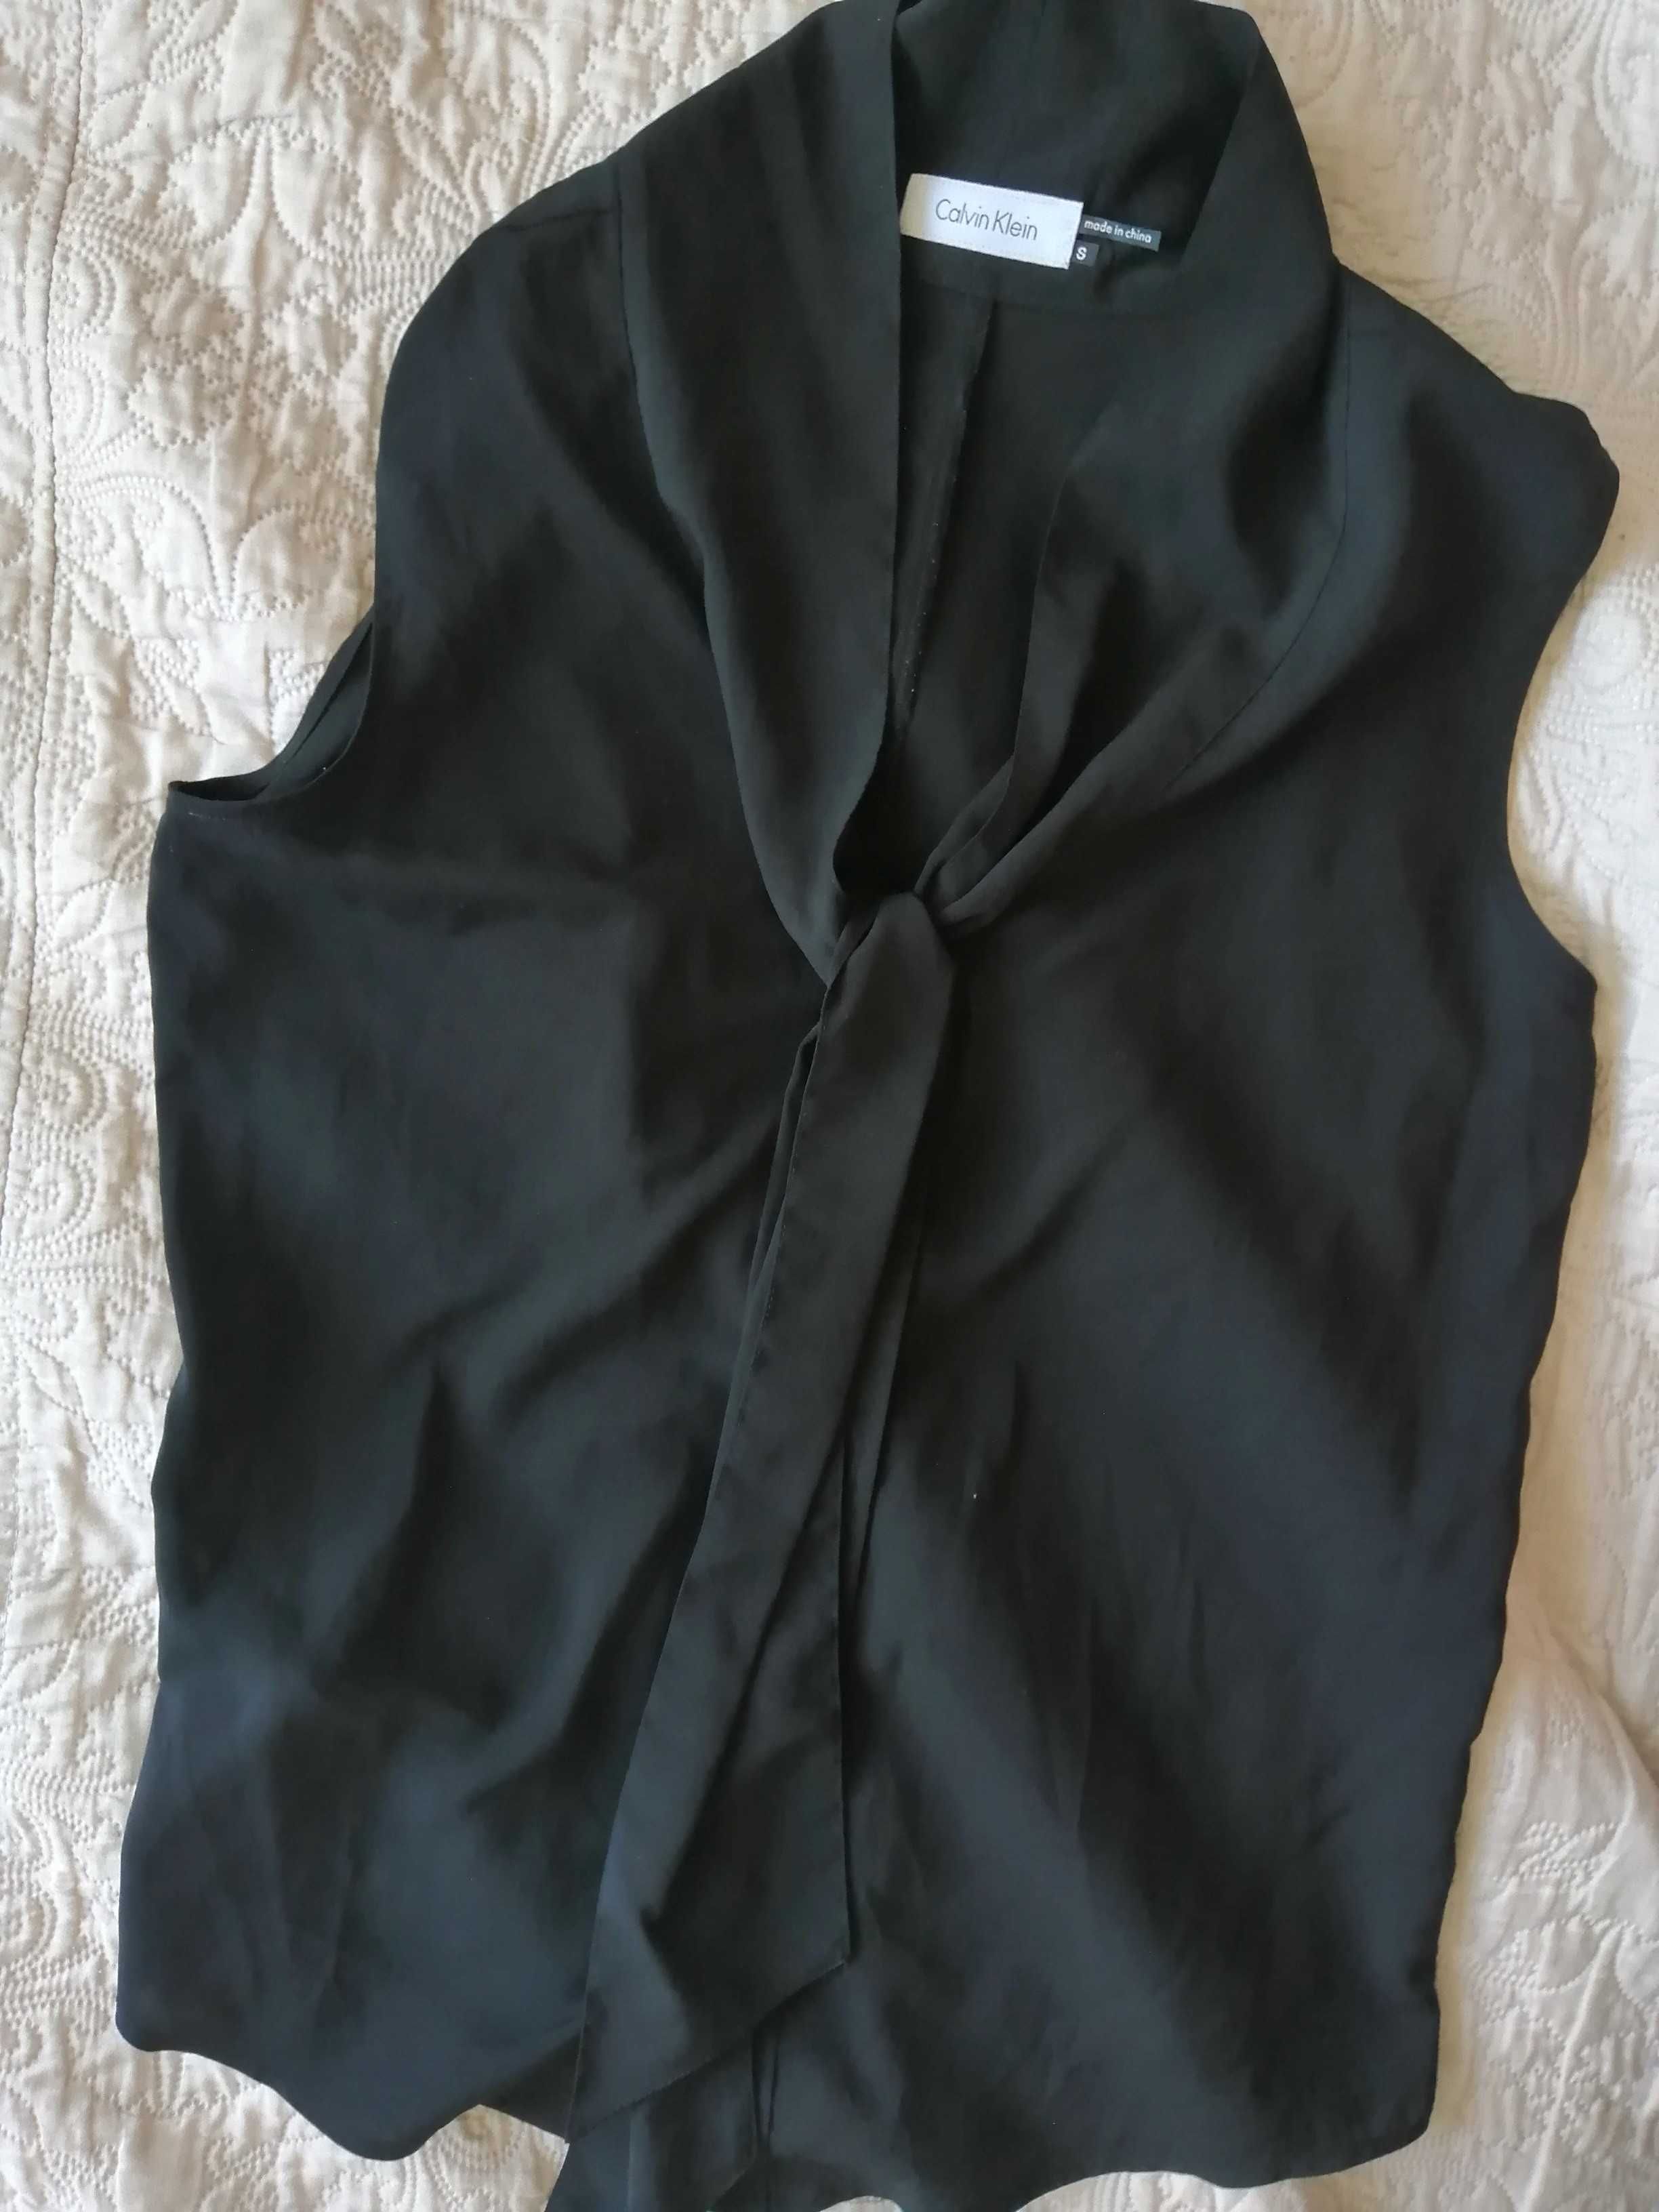 damska bluzka wizytowa czarna bez rękawów marka Calvin Klein rozmiar S